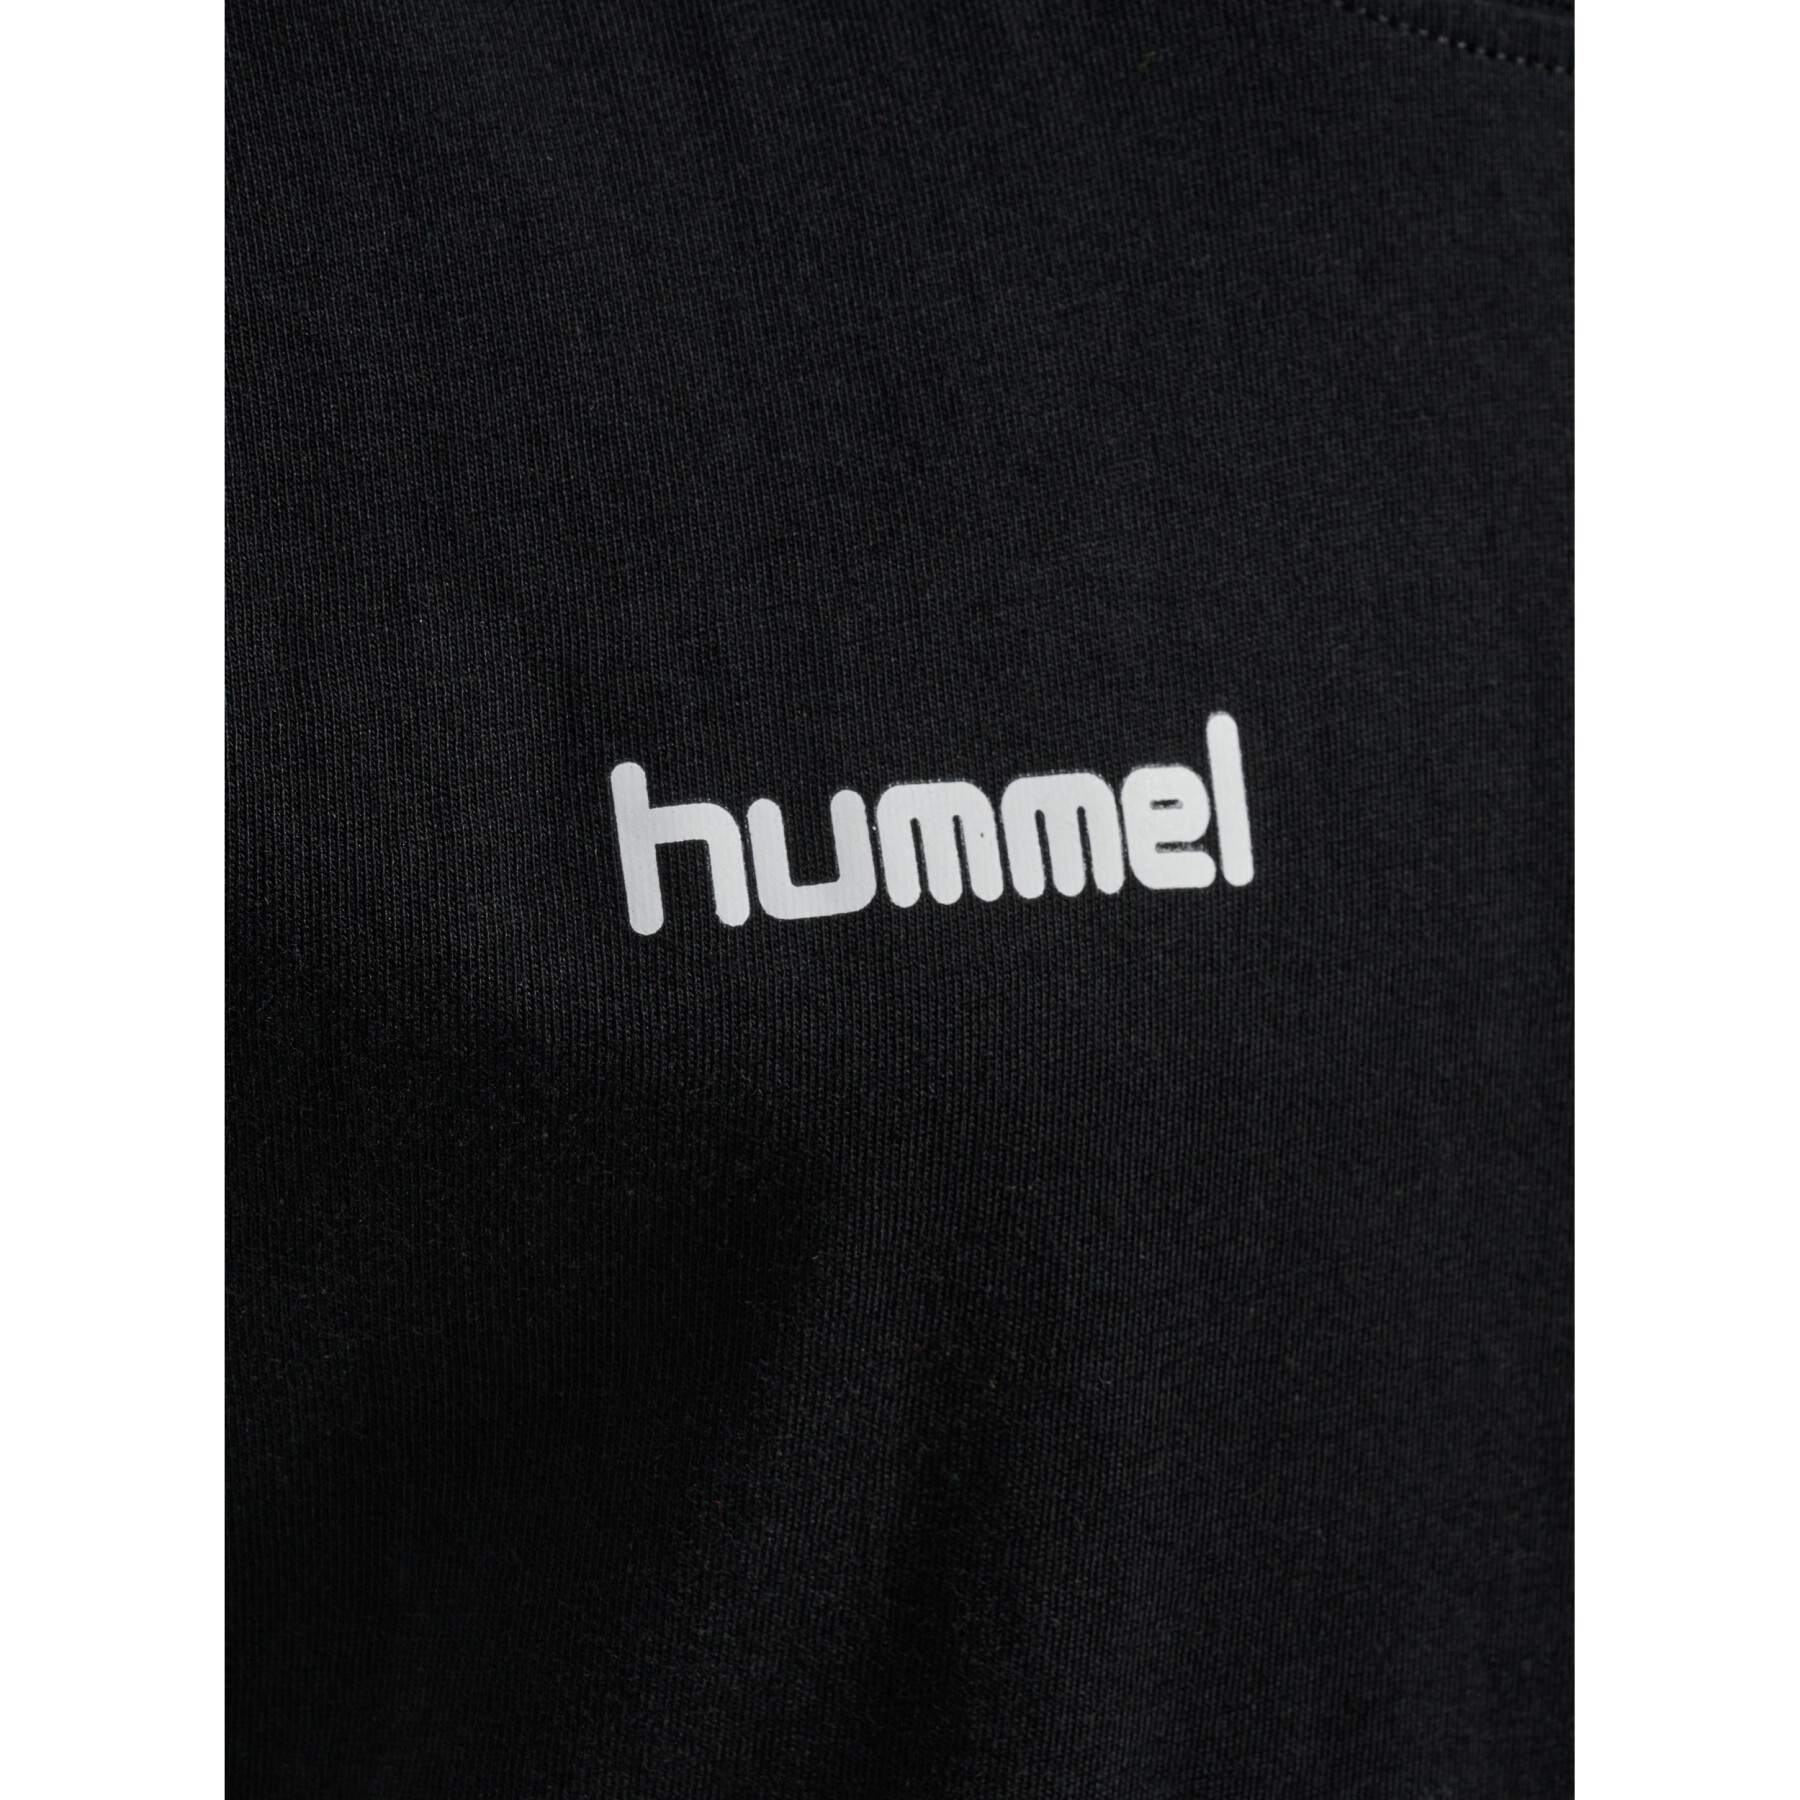 T-shirt de criança Hummel hmlGO